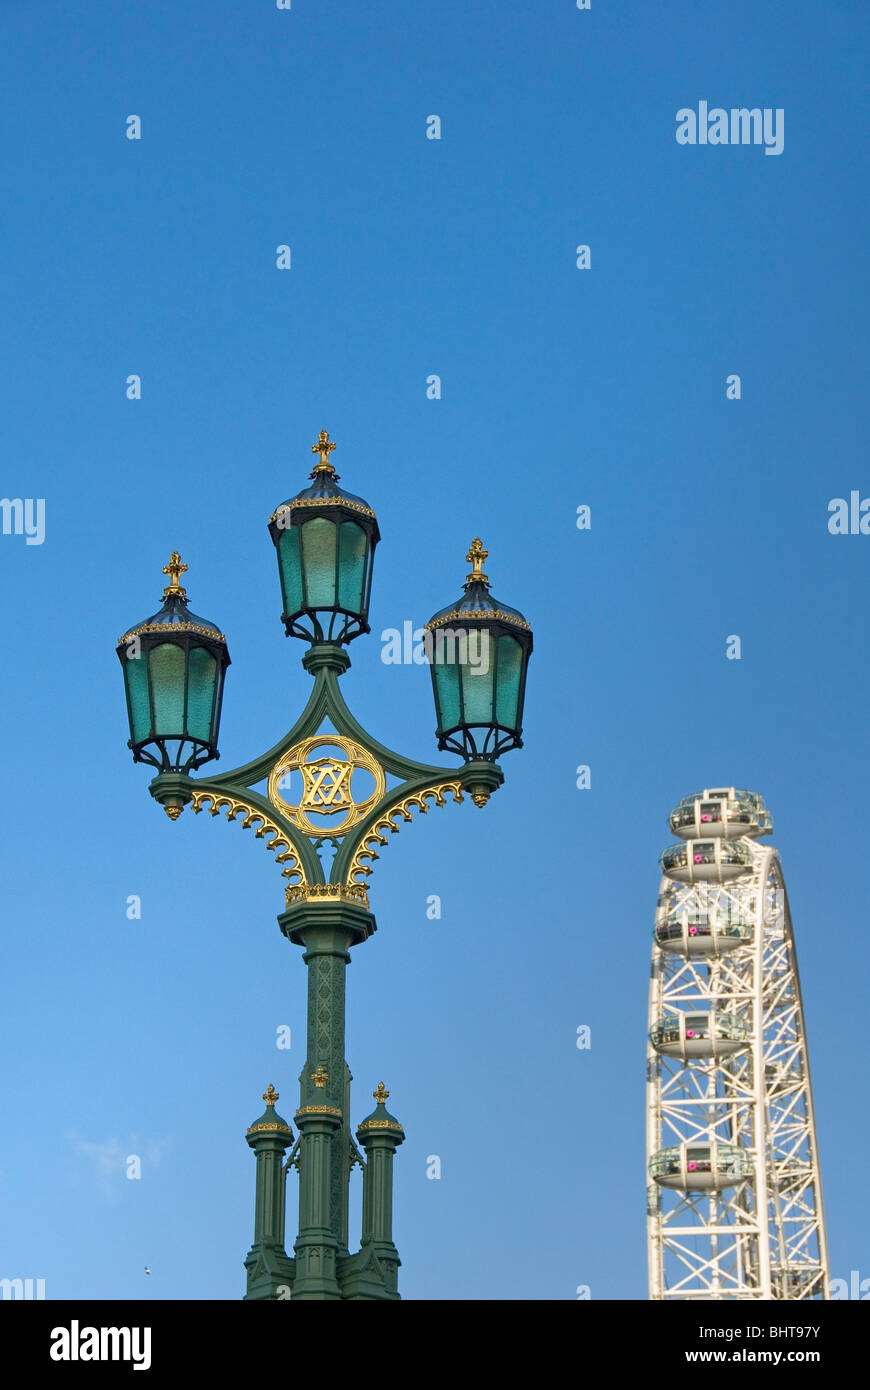 La vecchia strada lampada e il London Eye Millennium Wheel, ruota panoramica Ferris, London, England, Regno Unito, Europa Foto Stock